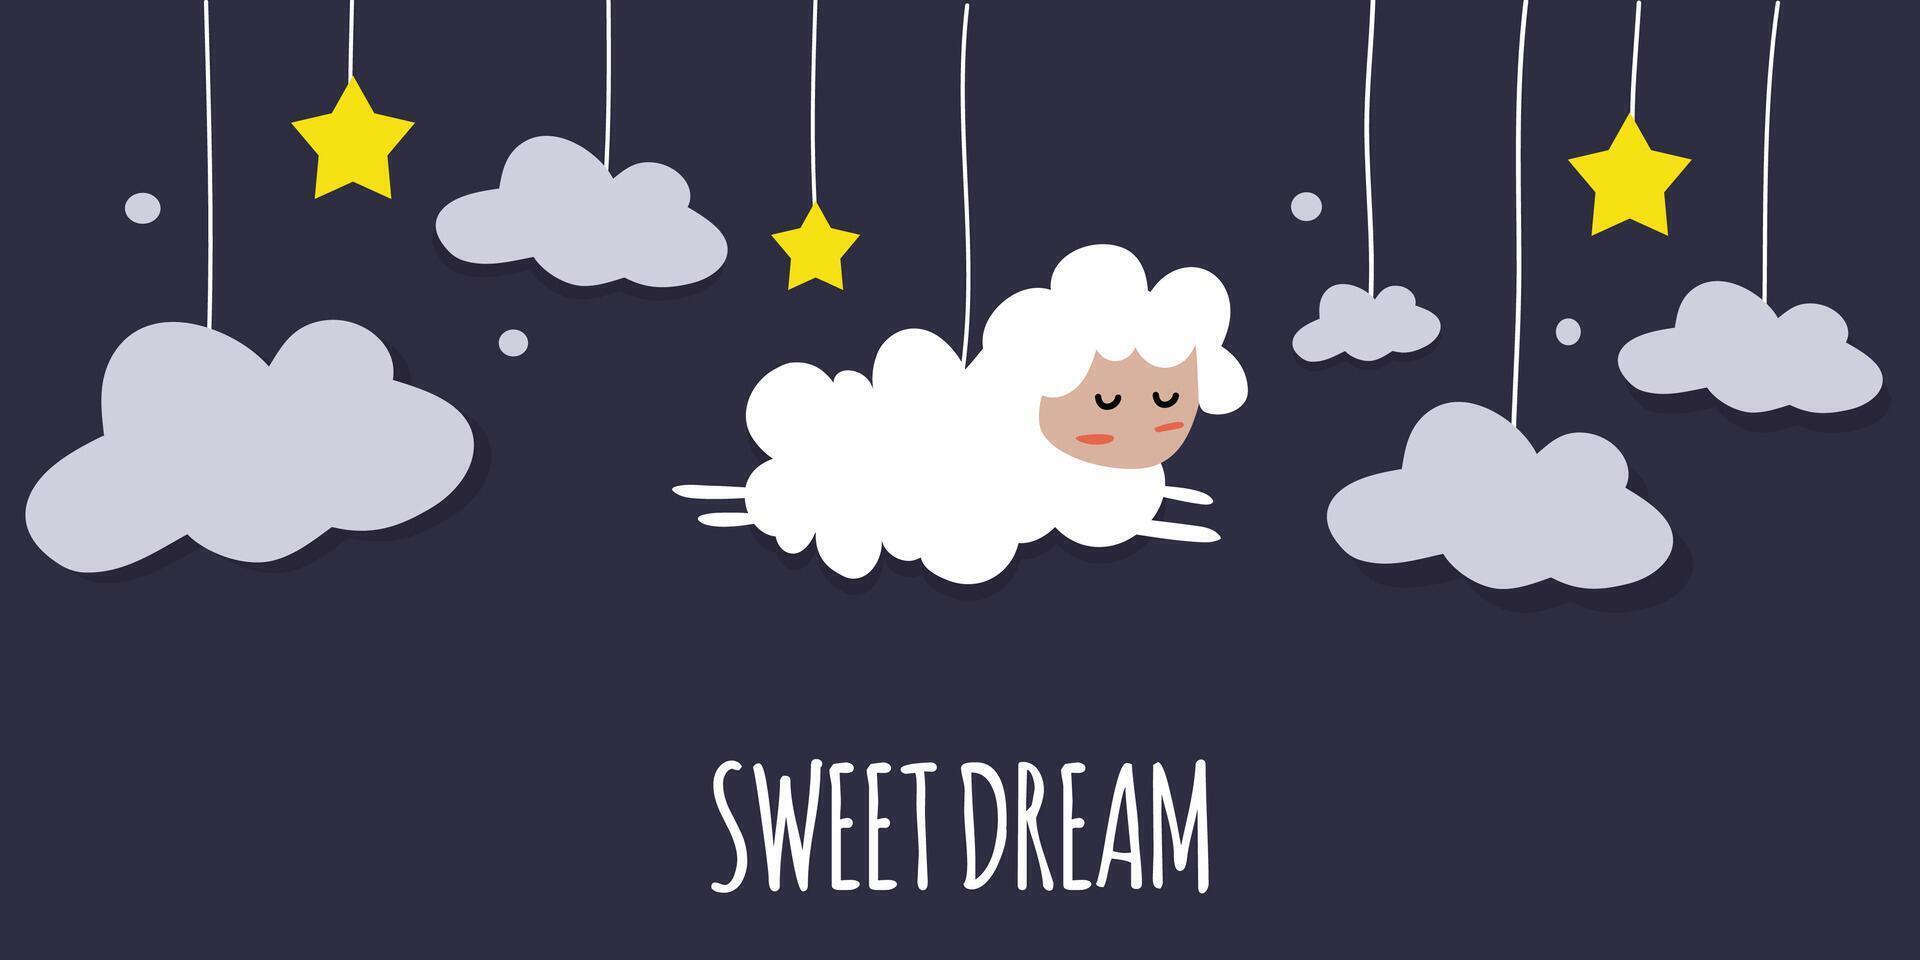 linda estilo de dibujos animados oveja duerme en el nubes deseando usted bueno Sueños. vector